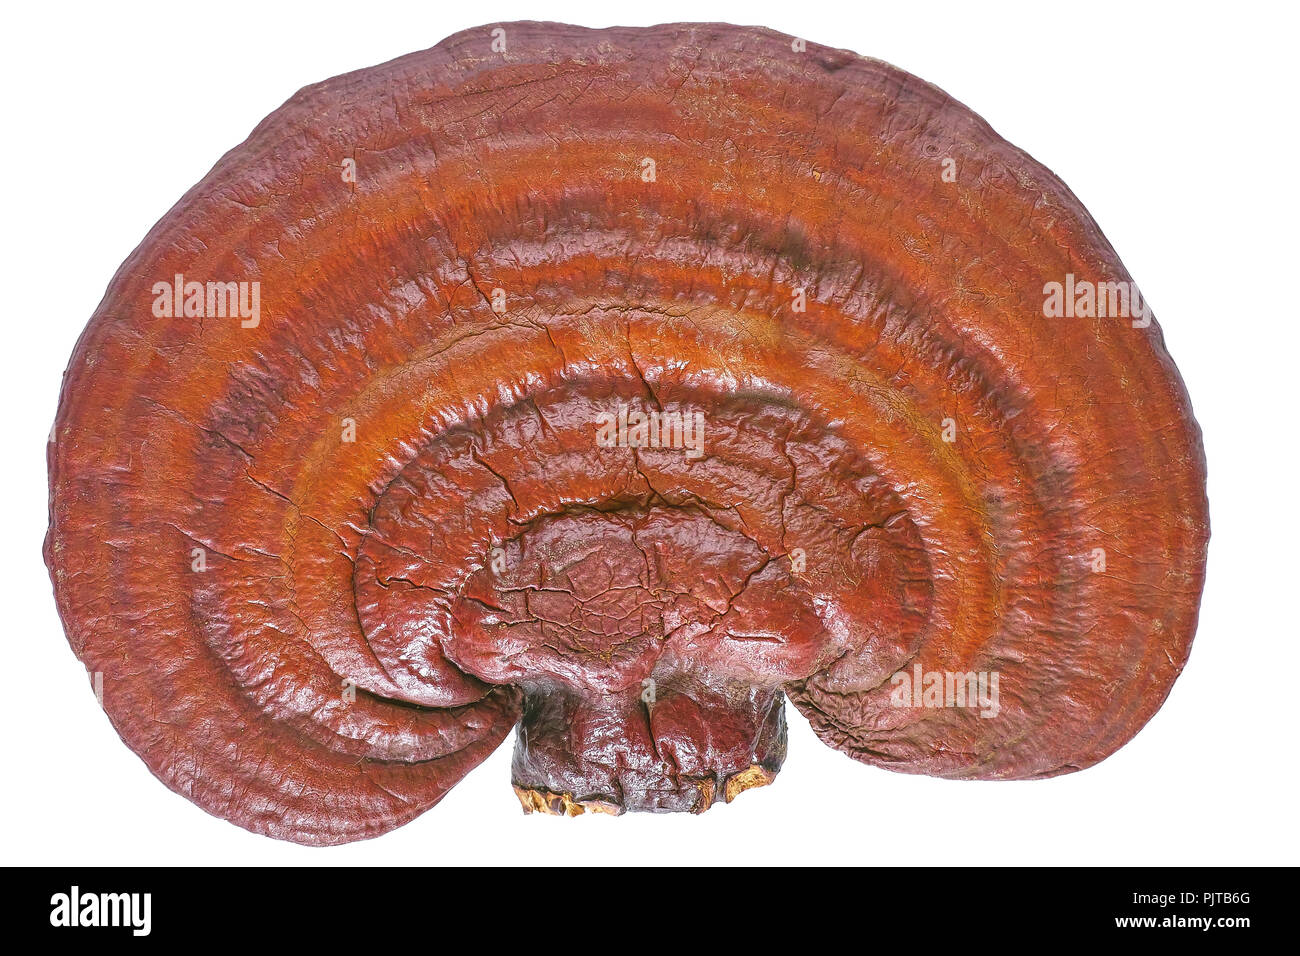 Lingzhi Mushroom Ganoderma Lucidum isolated on white background Stock Photo